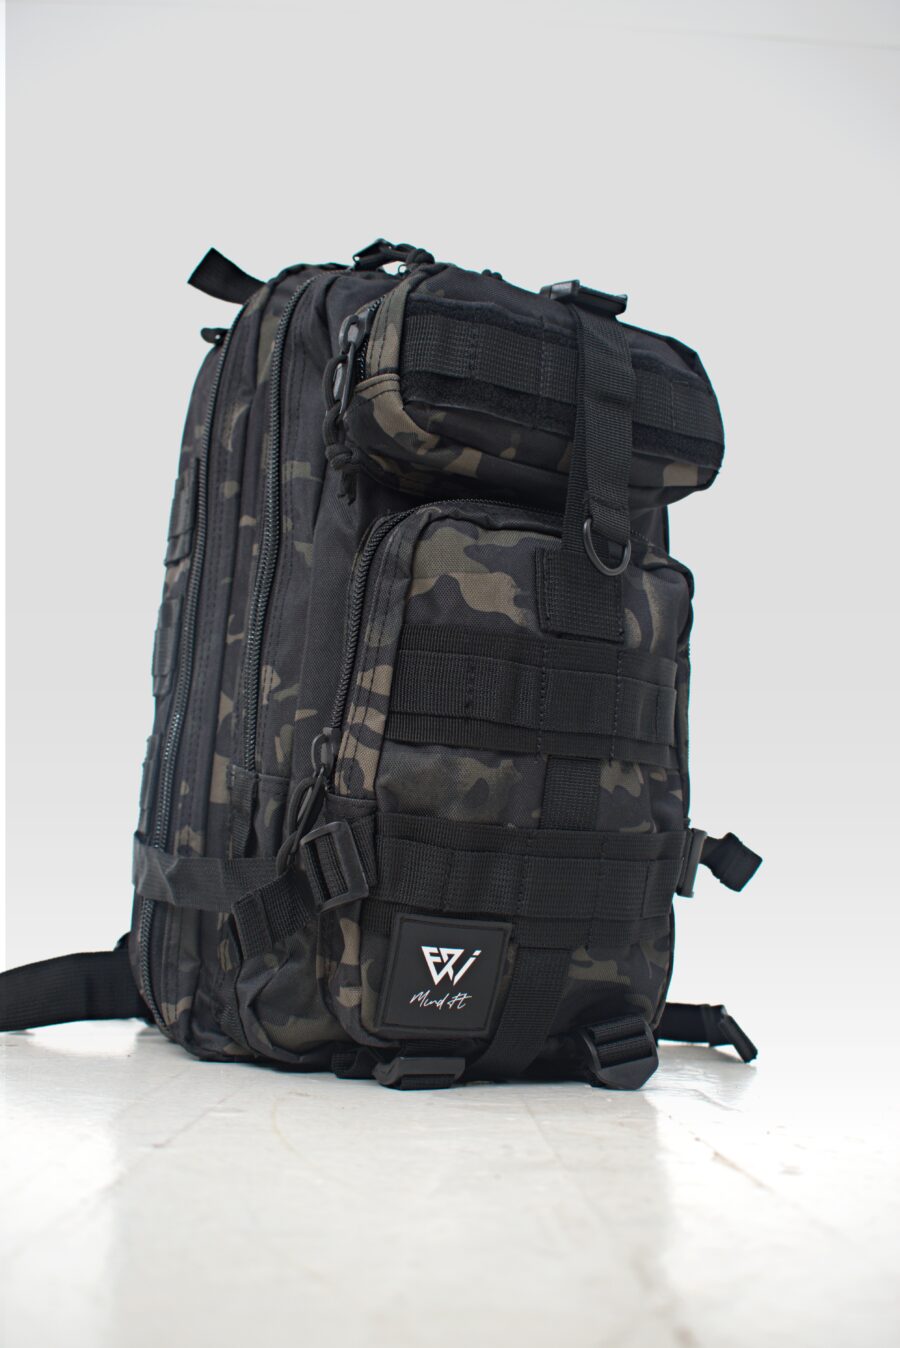 sac de voyage militaire 35litres camouflage noir